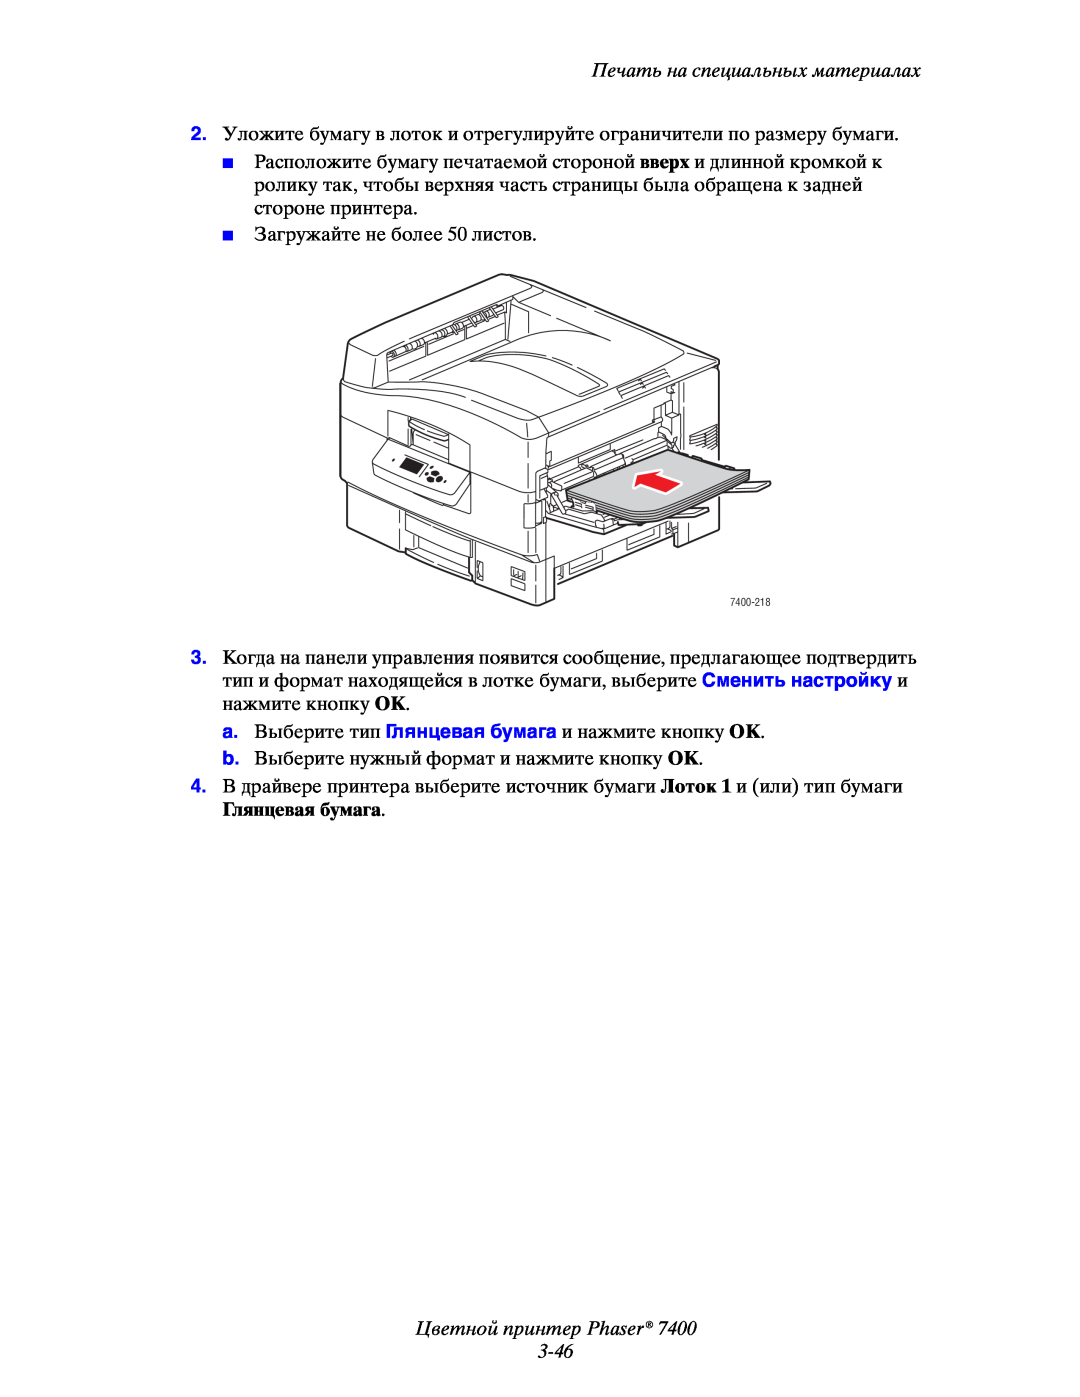 Xerox 7400 manual Цветной принтер Phaser 3-46, Печать на специальных материалах, Загружайте не более 50 листов 